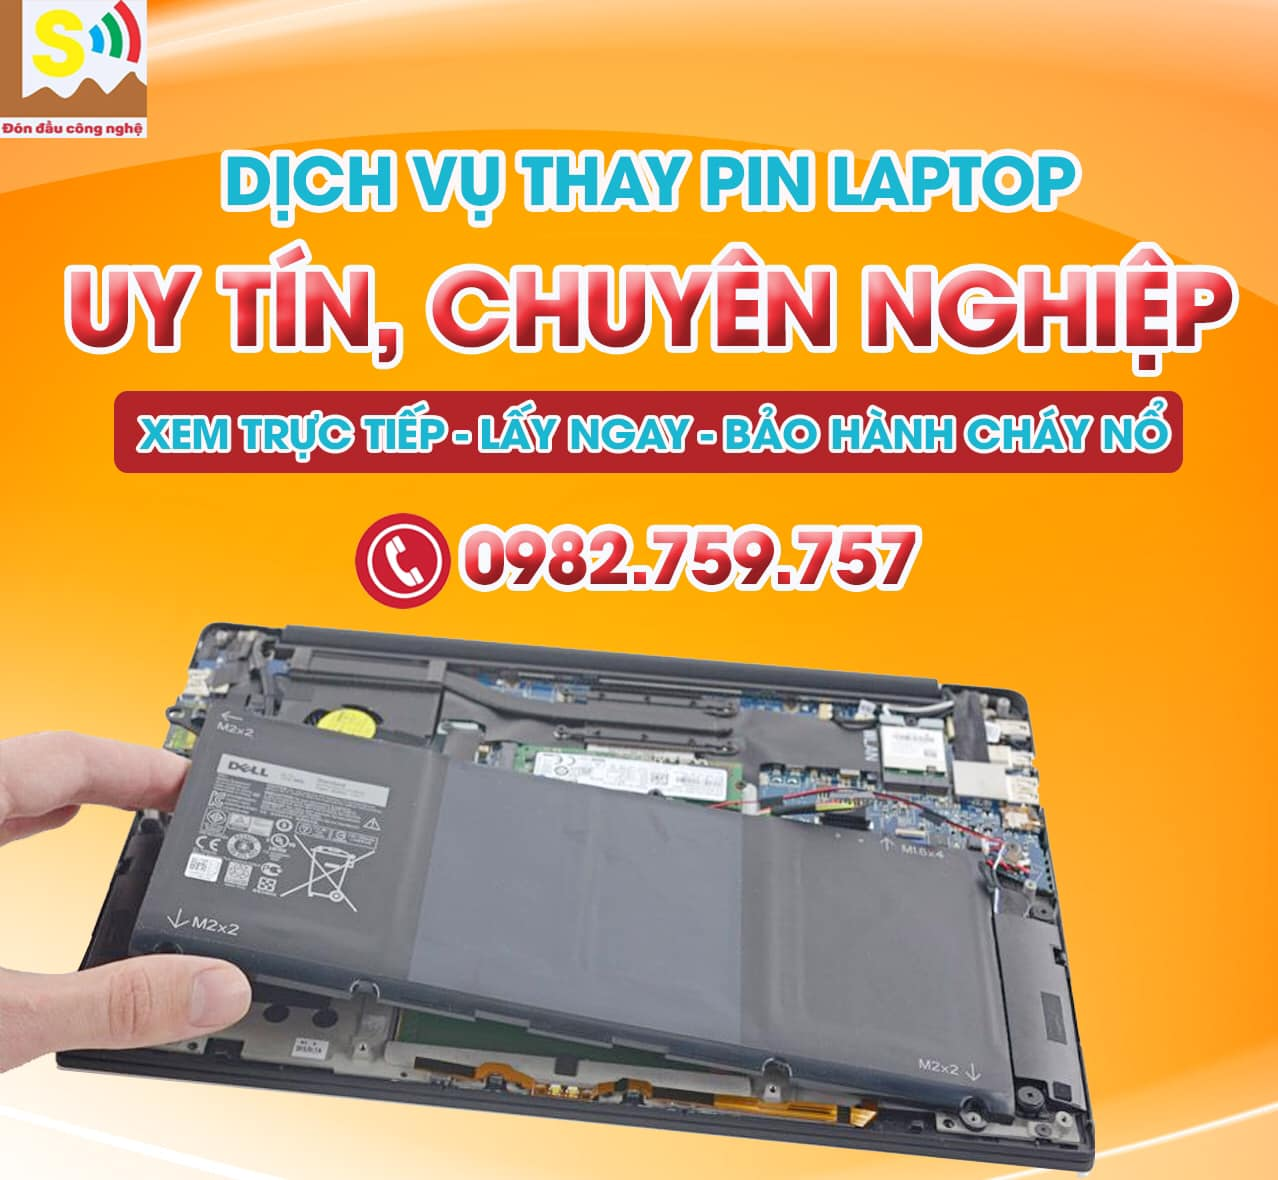 Lam Sơn Computer ảnh 2